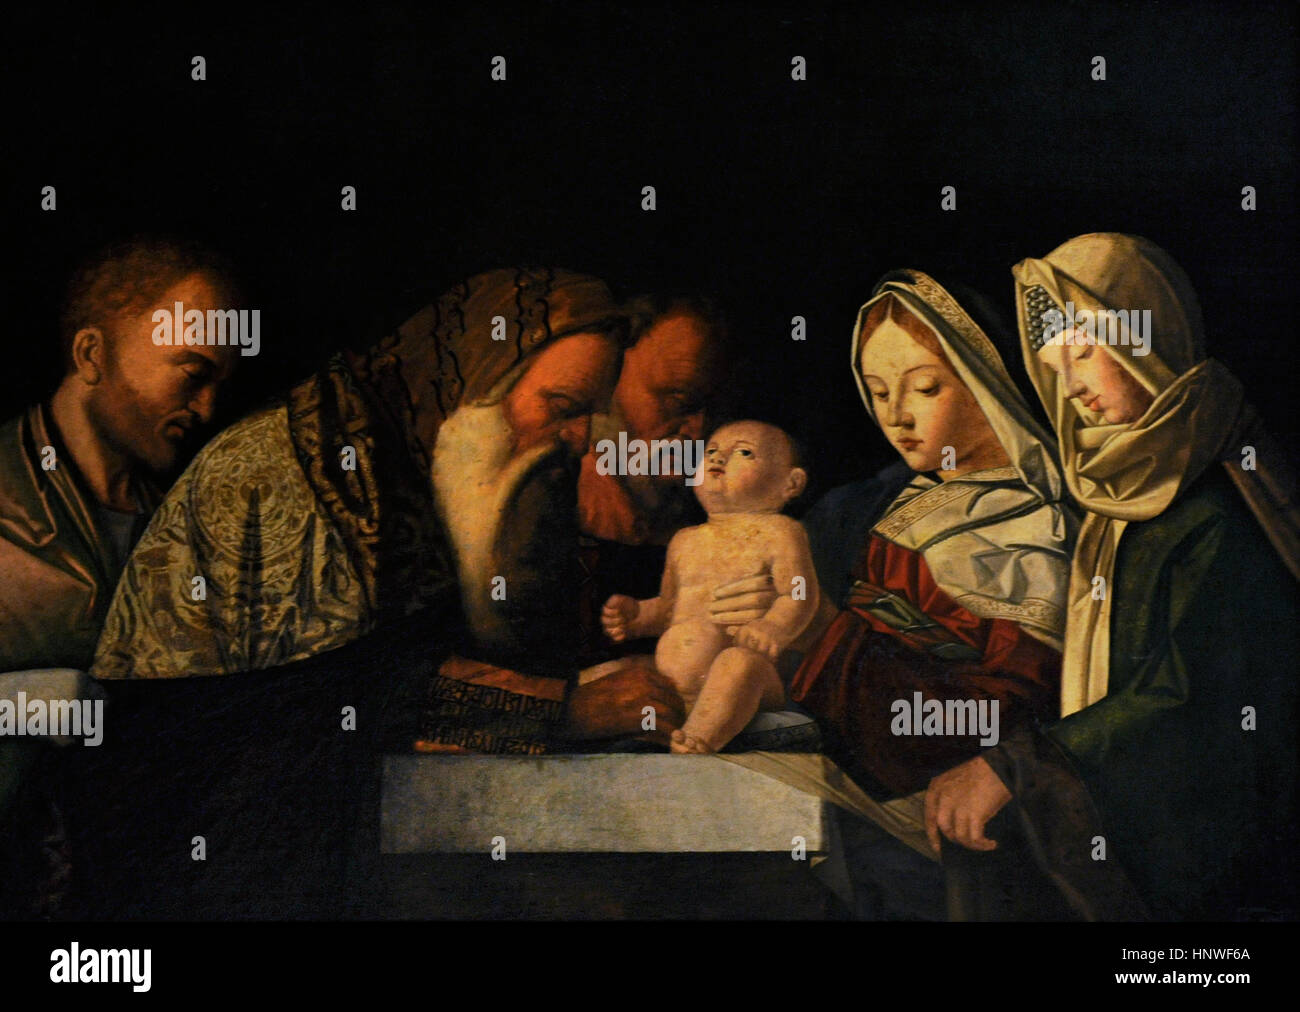 Giovanni Bellini (1432-1516). Pintor italiano. La circuncisión, ca. 1500. Colección de bourbon. Museo Nacional de Capodimonte. Nápoles. Italia. Foto de stock